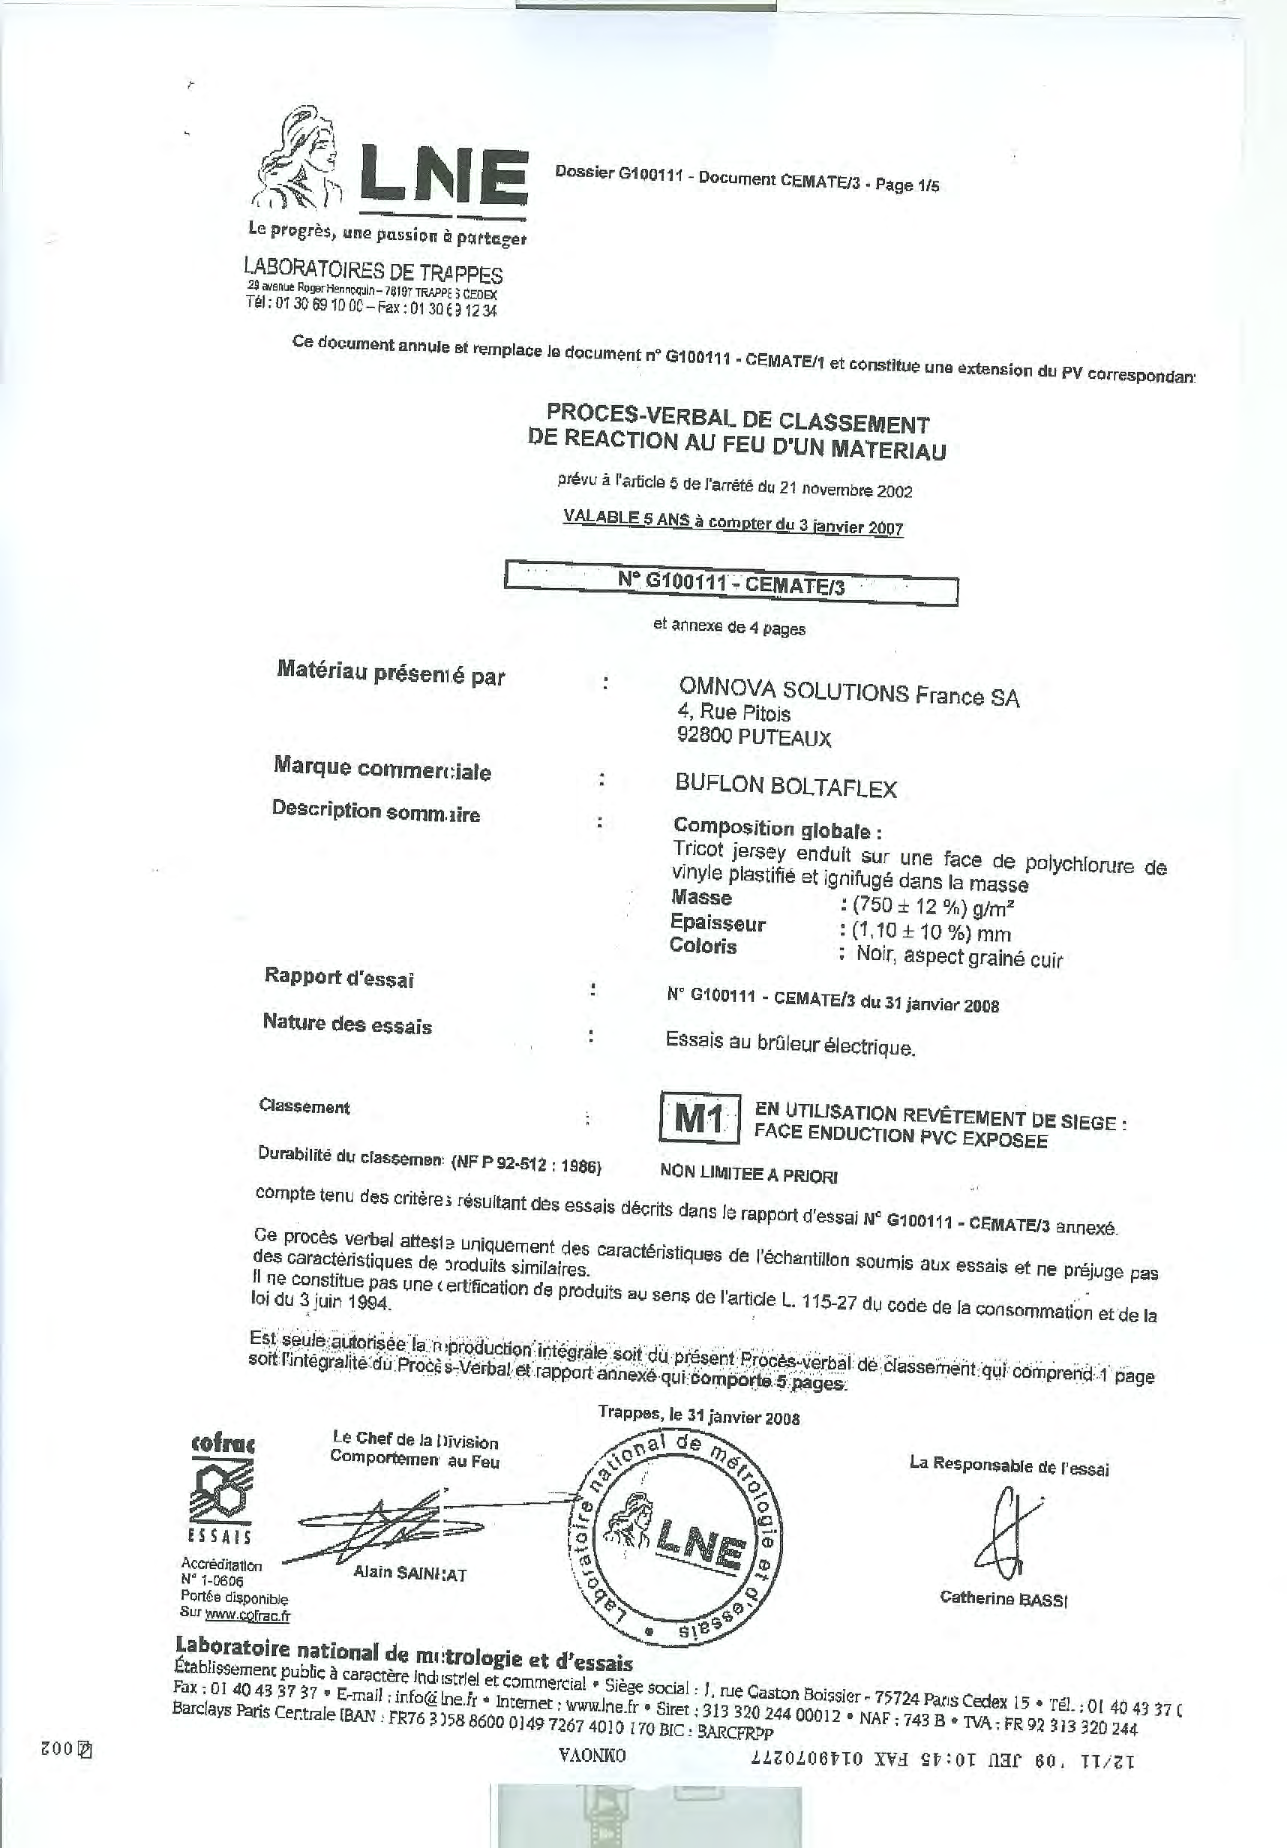 Boltaflex Certificat M1